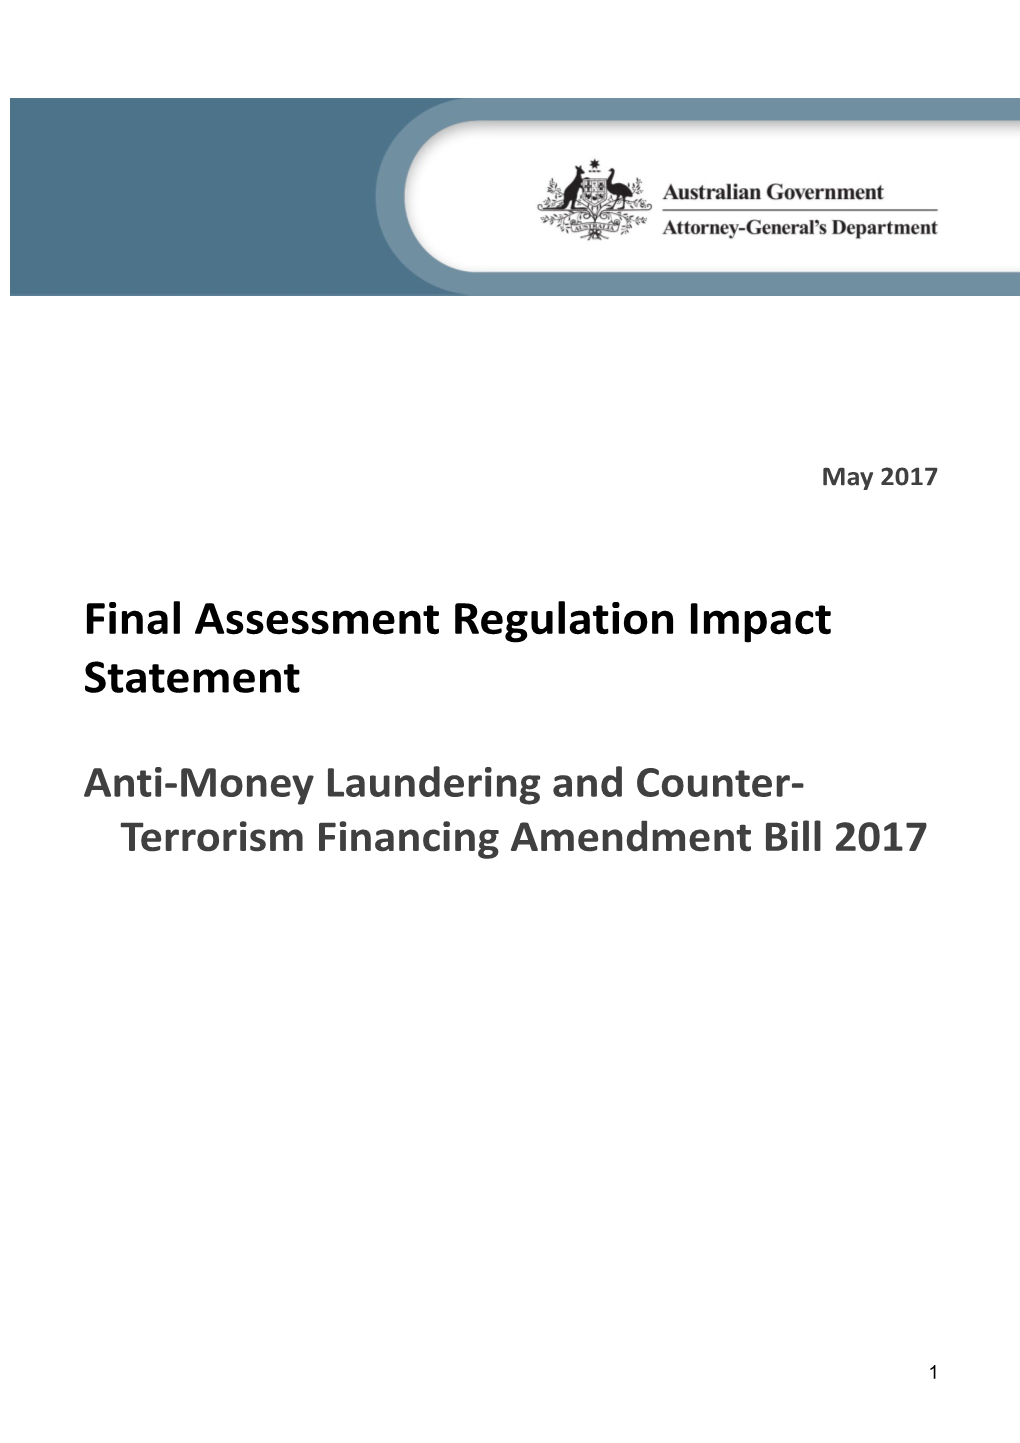 Final Assessment Regulation Impact Statement